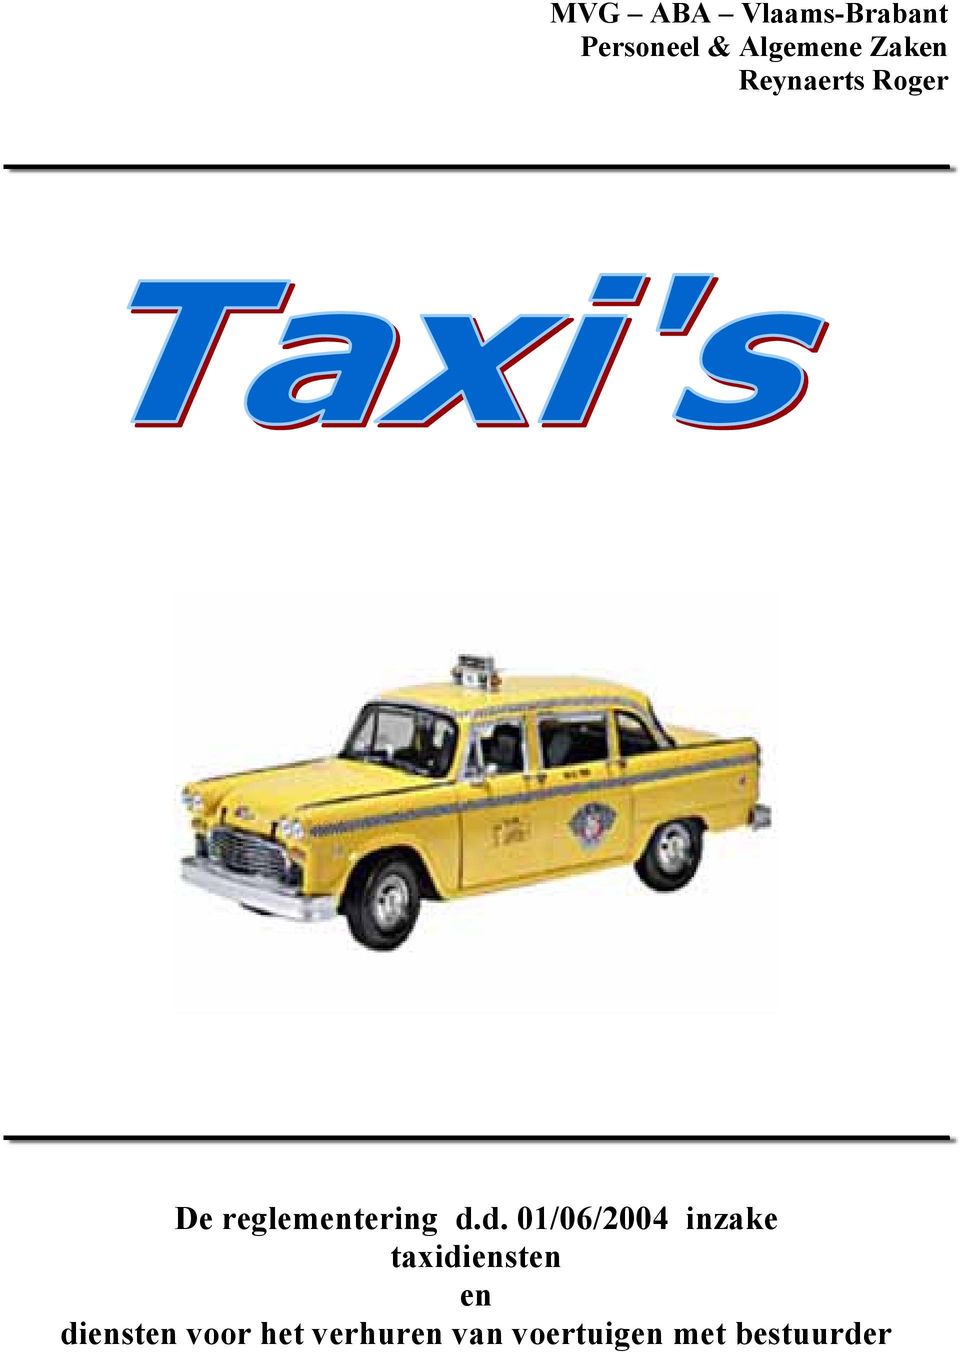 d. 01/06/2004 inzake taxidiensten en